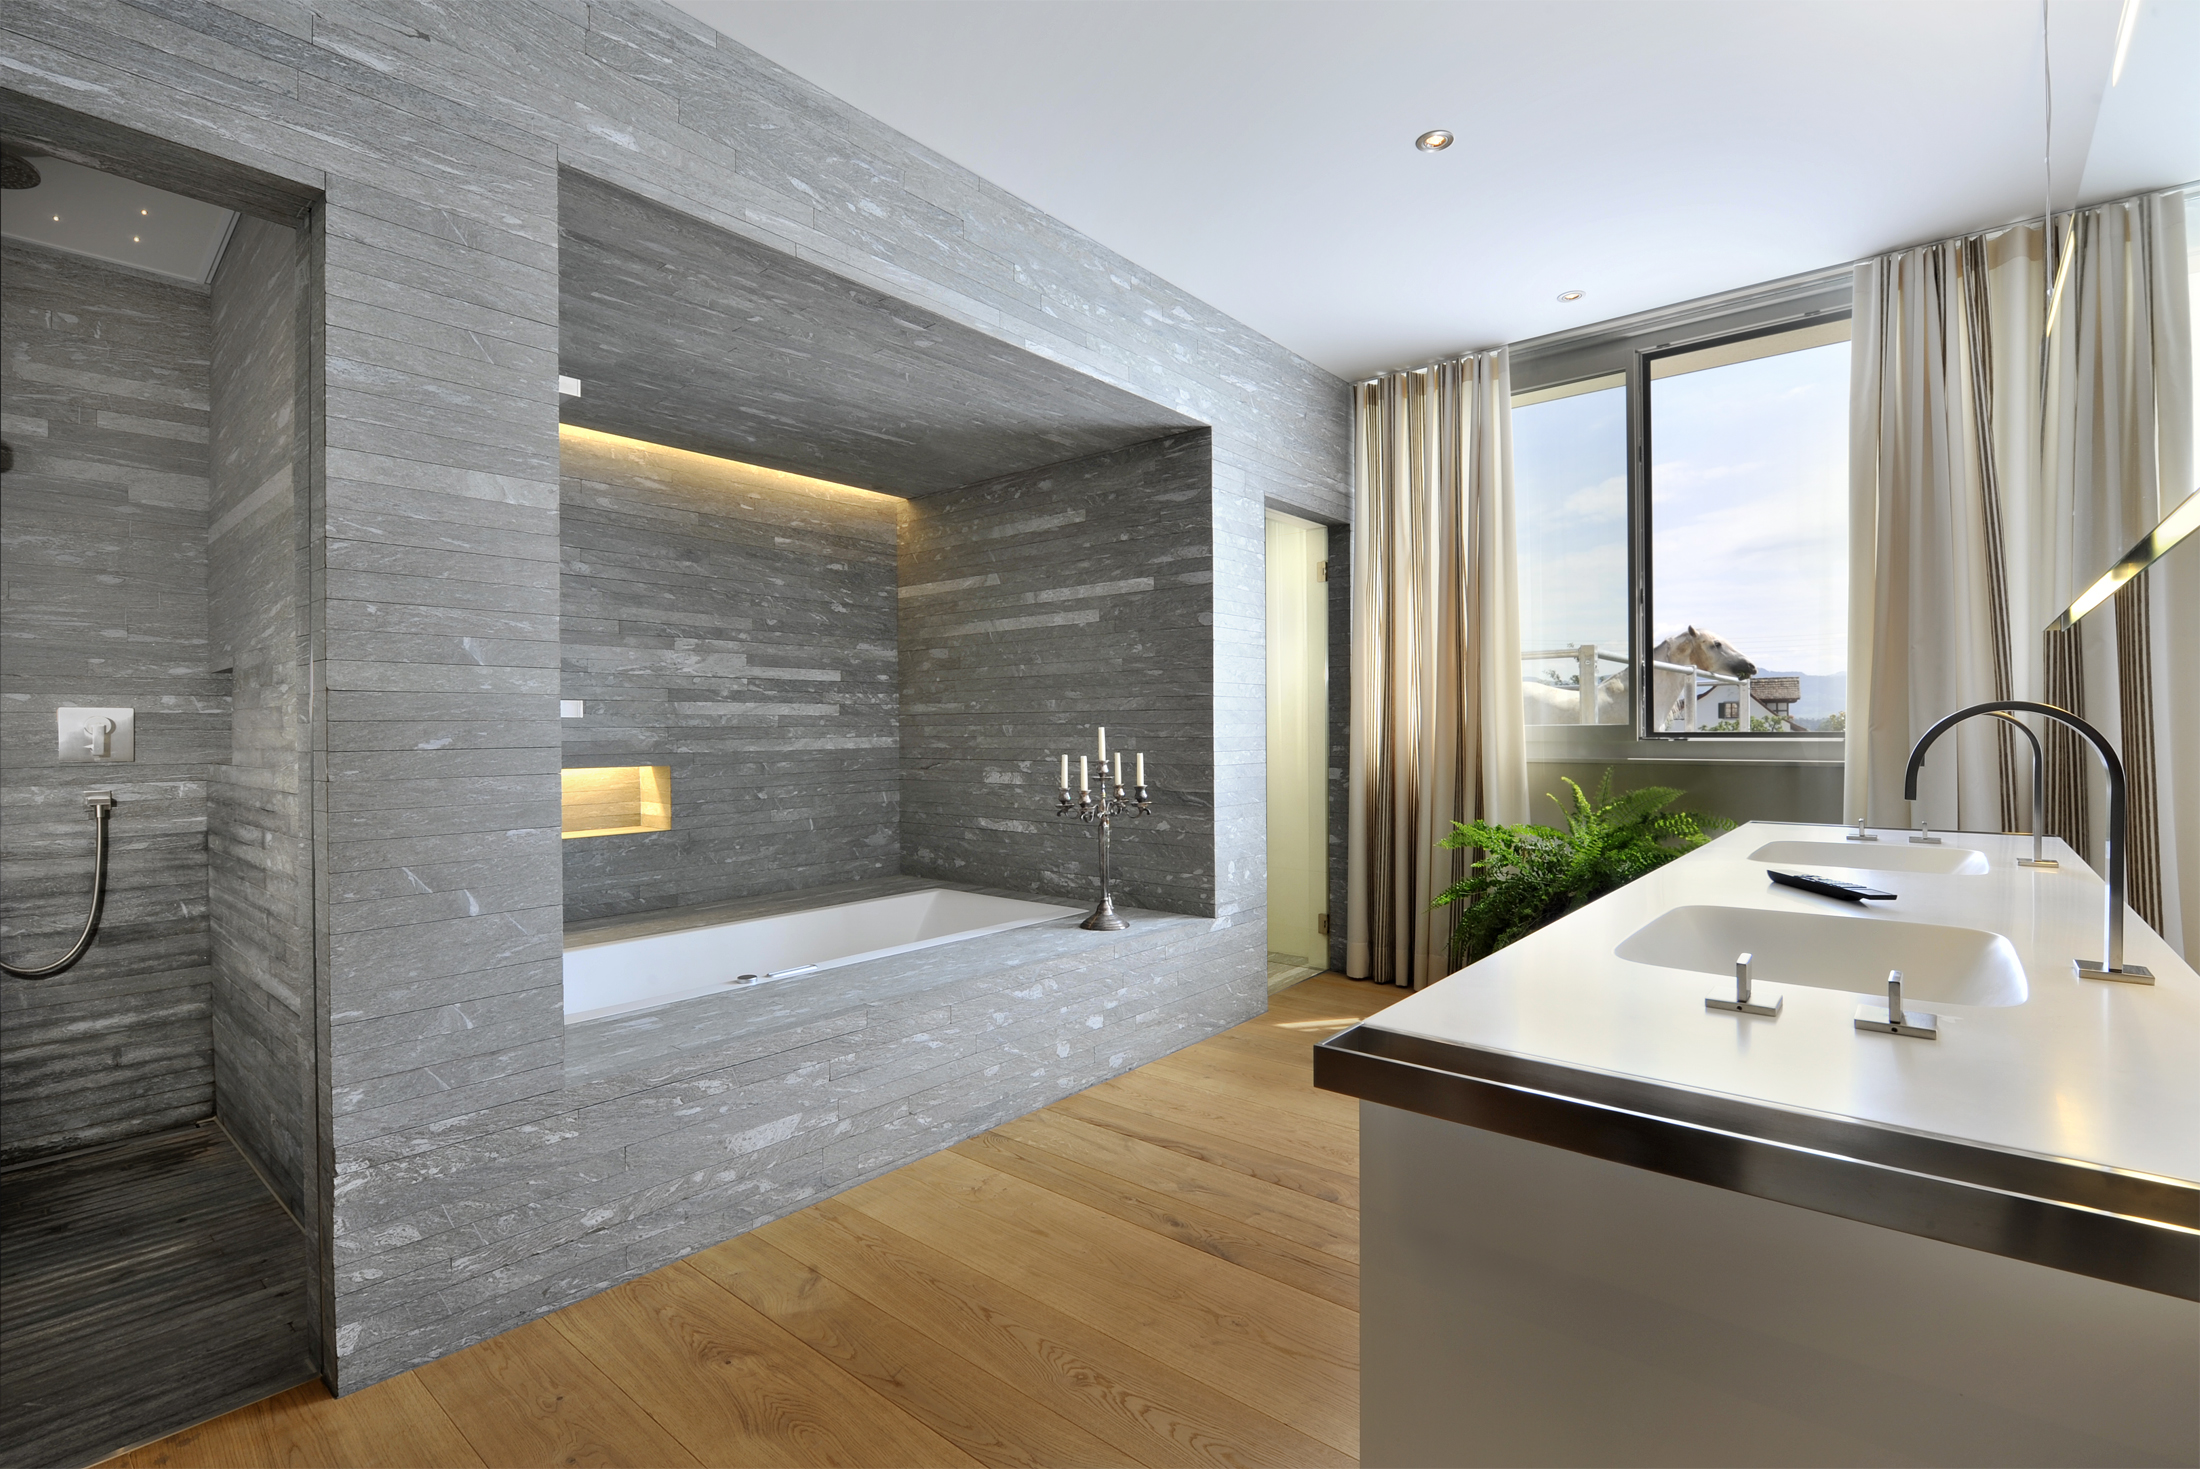 designer-bathrooms-in-design-ideas-bathroom-decorating-luxury-home-interior-design-ideas